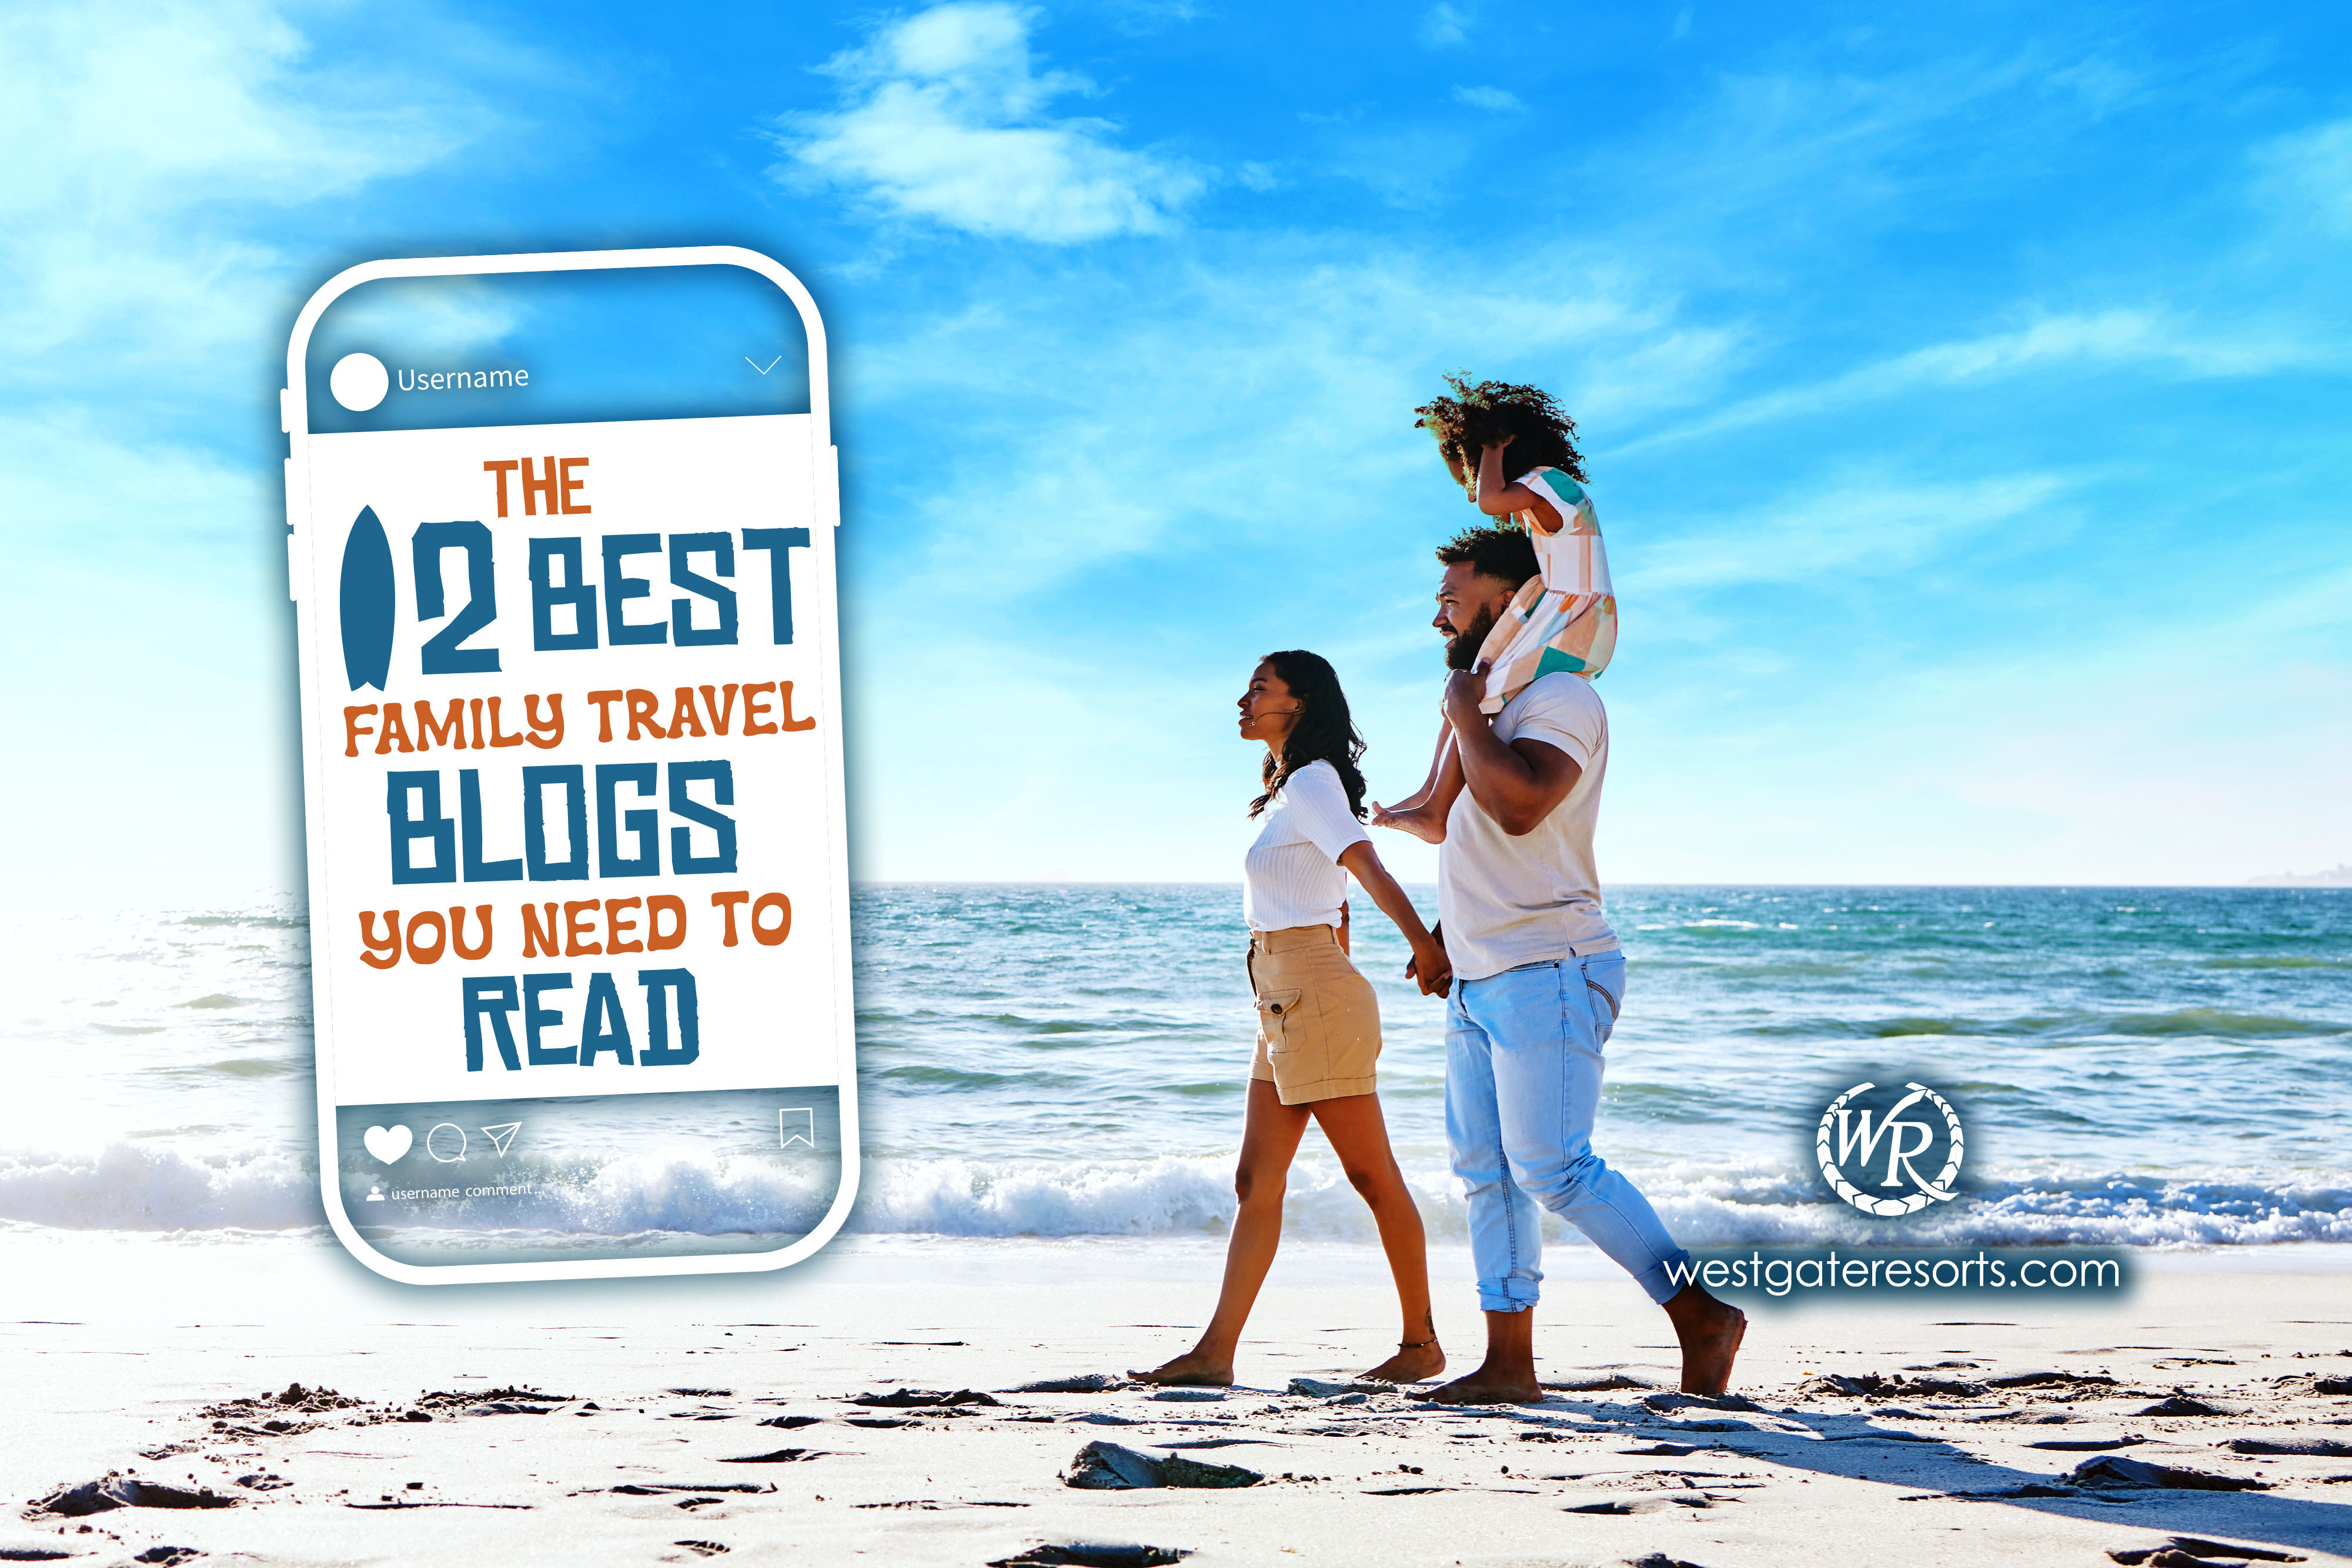 Los 12 mejores blogs de viajes familiares que debes leer